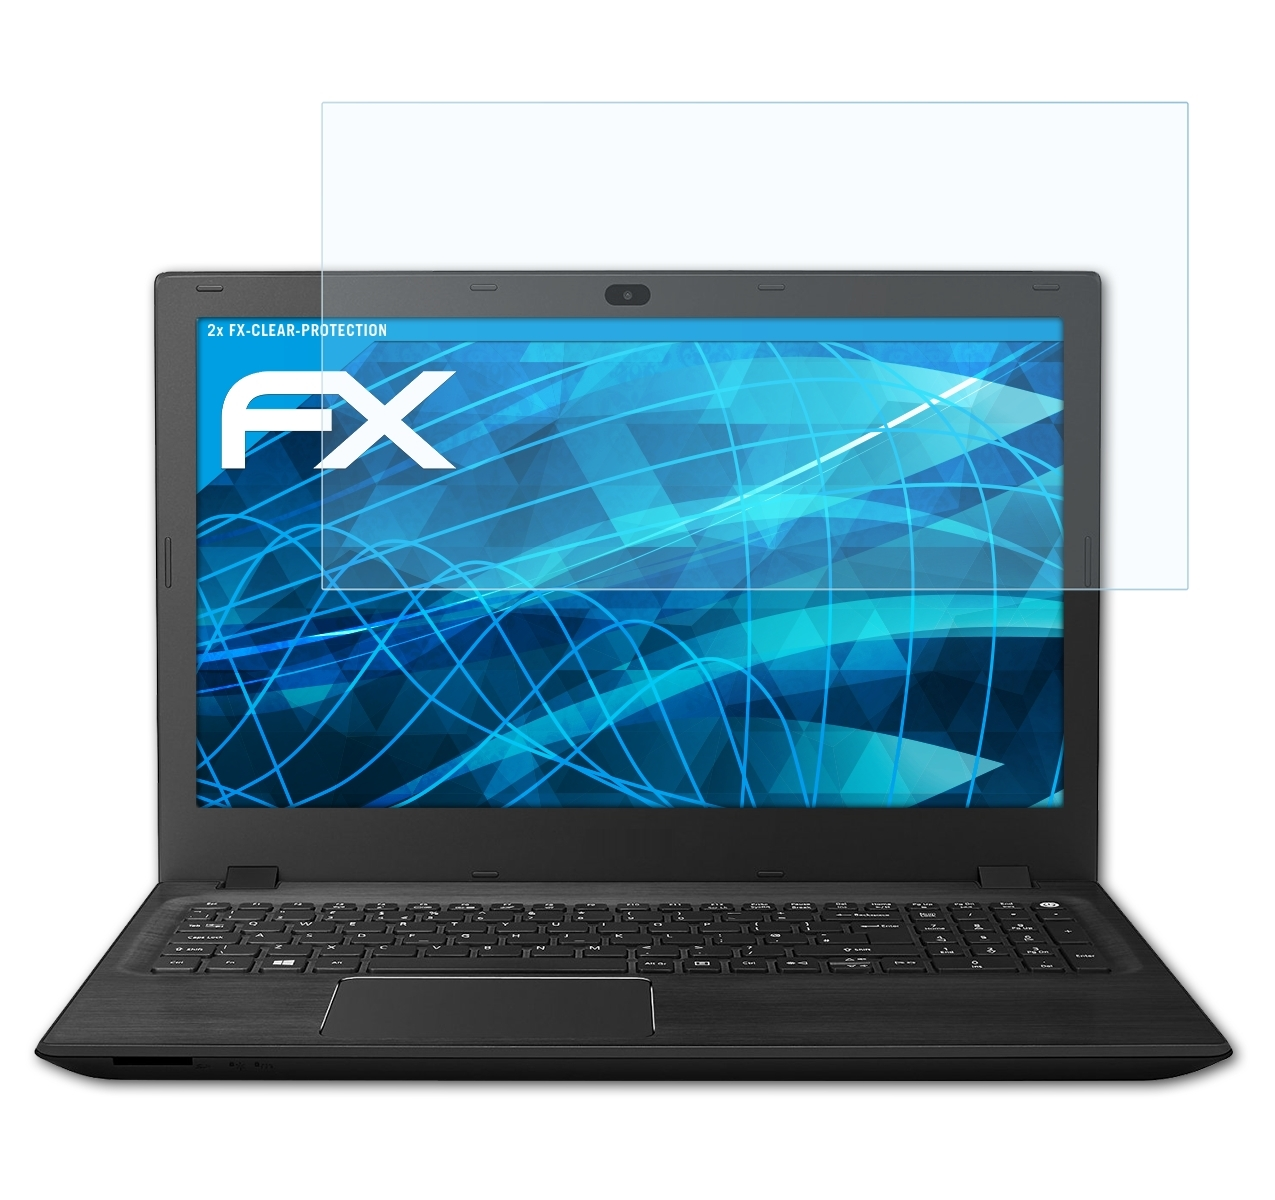 ATFOLIX 2x FX-Clear Aspire F 15) Acer Displayschutz(für